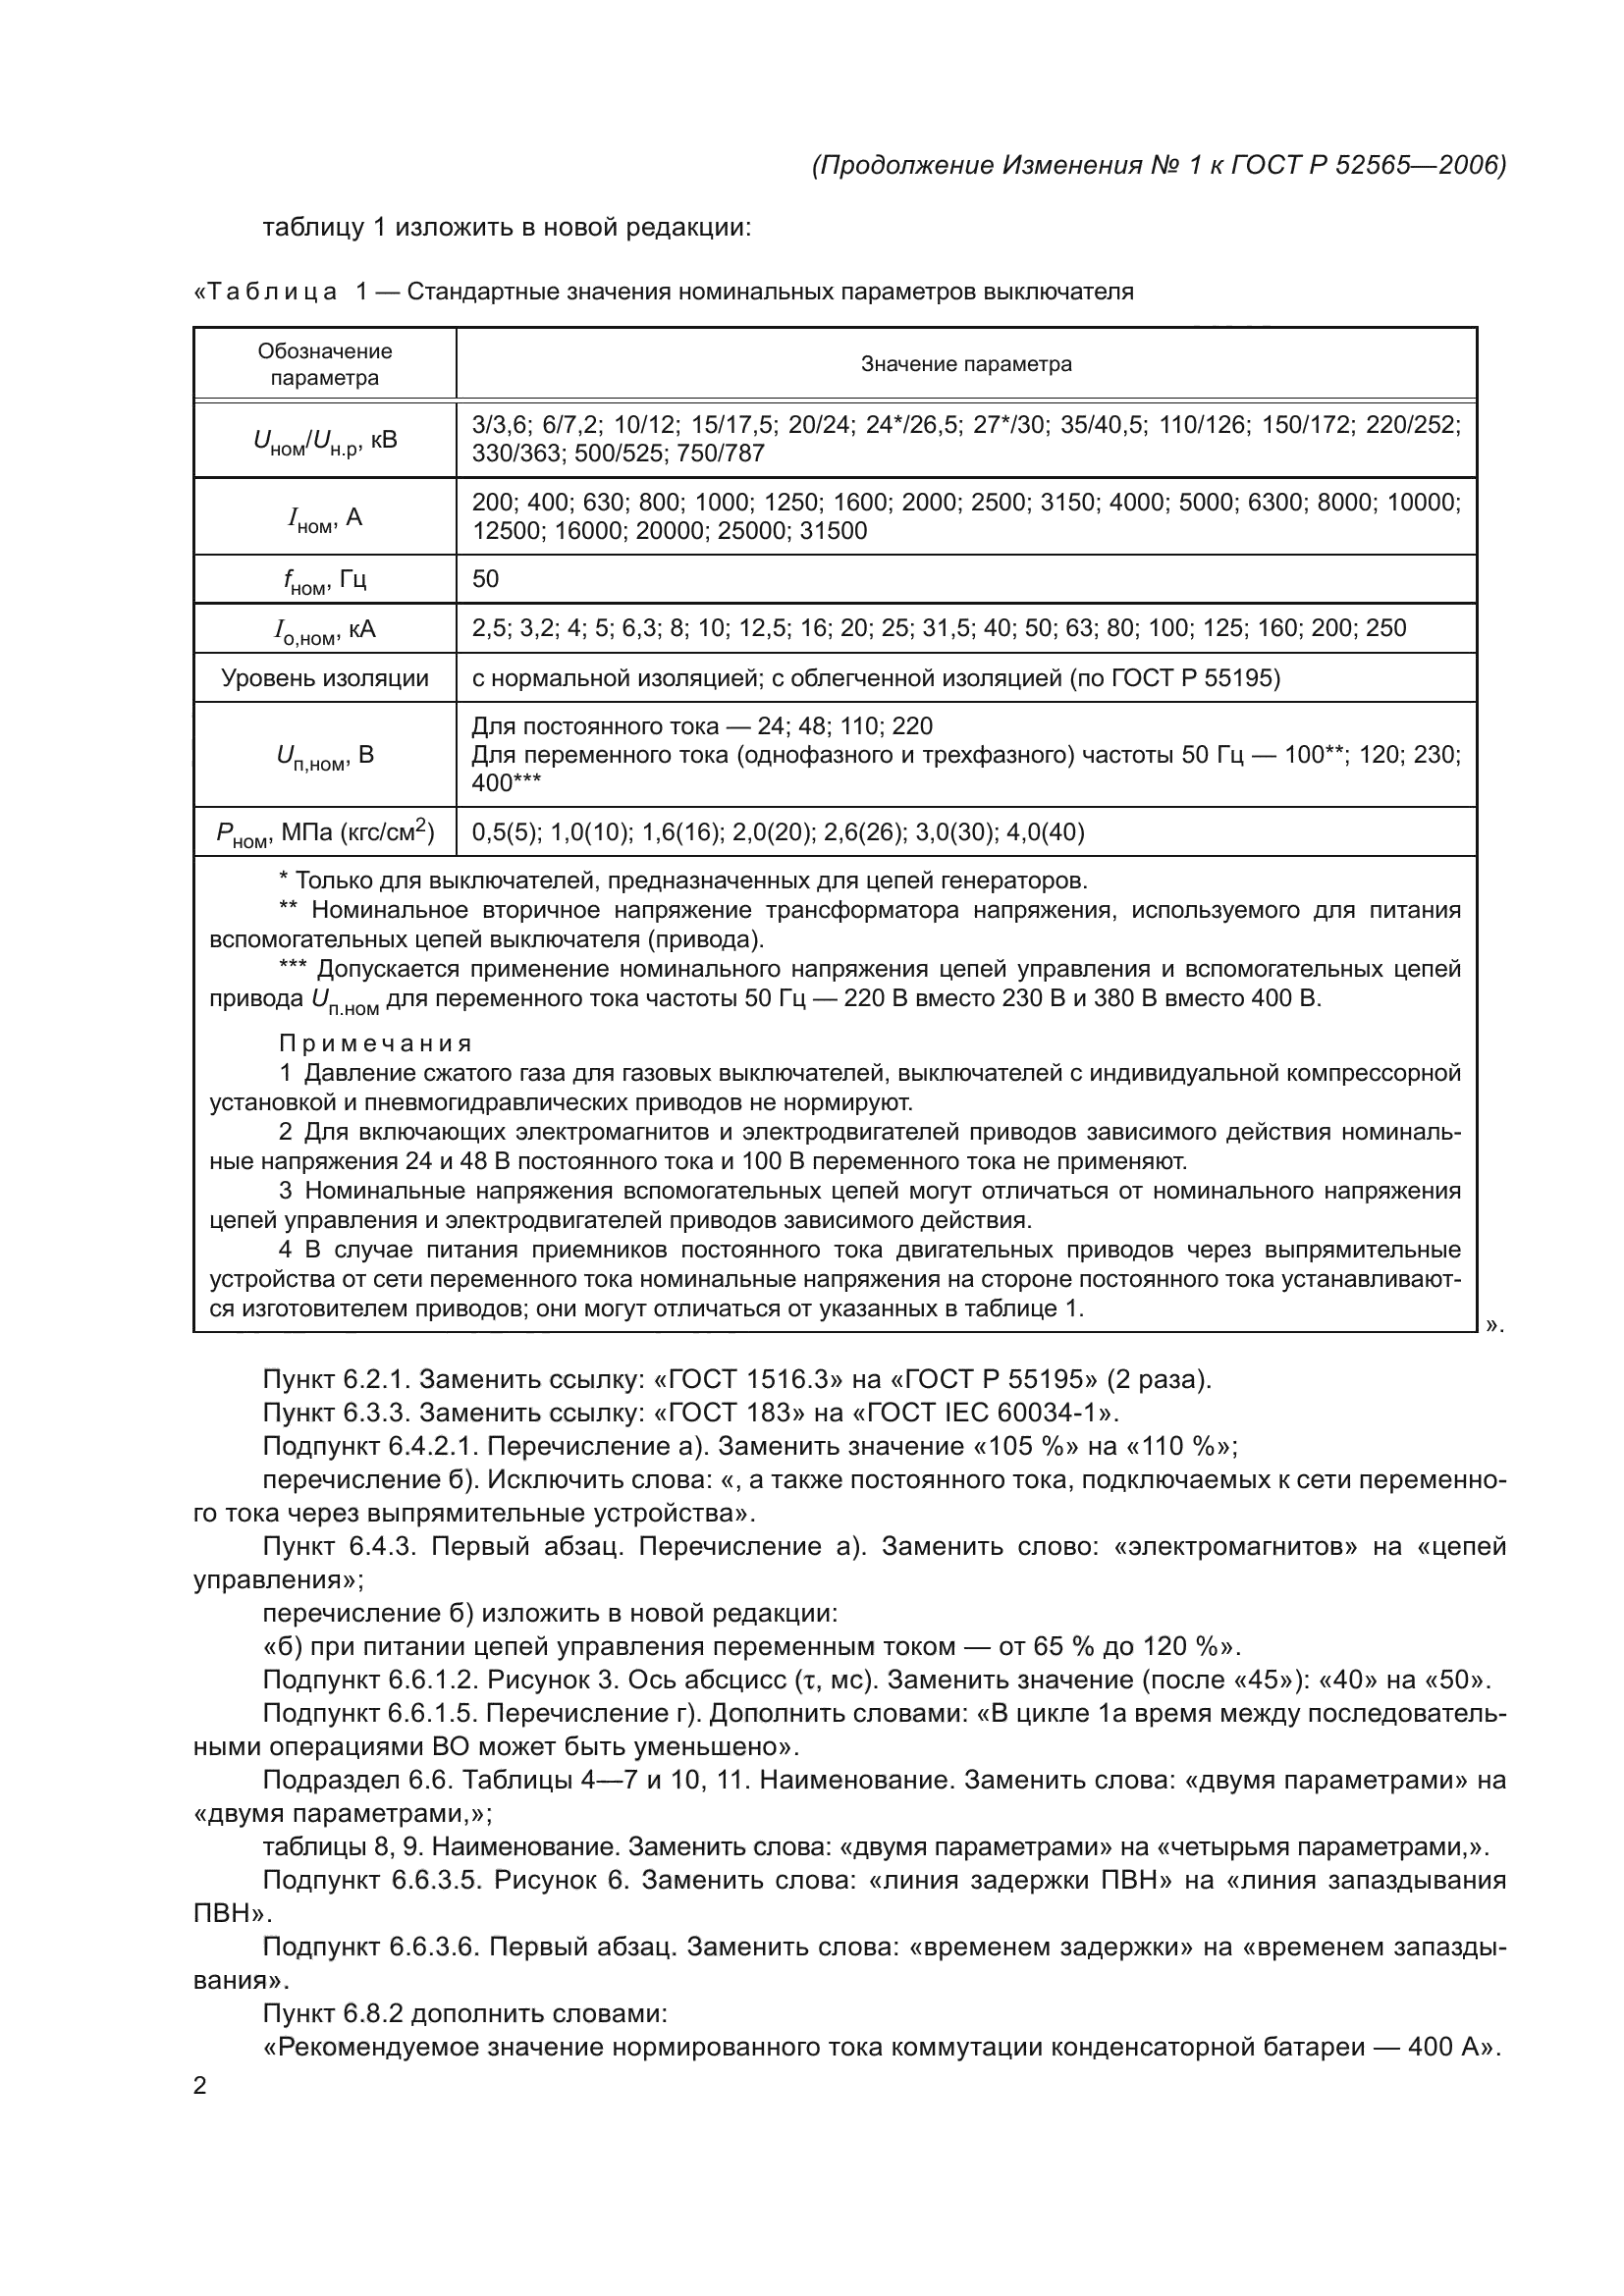 Изменение №1 к ГОСТ Р 52565-2006